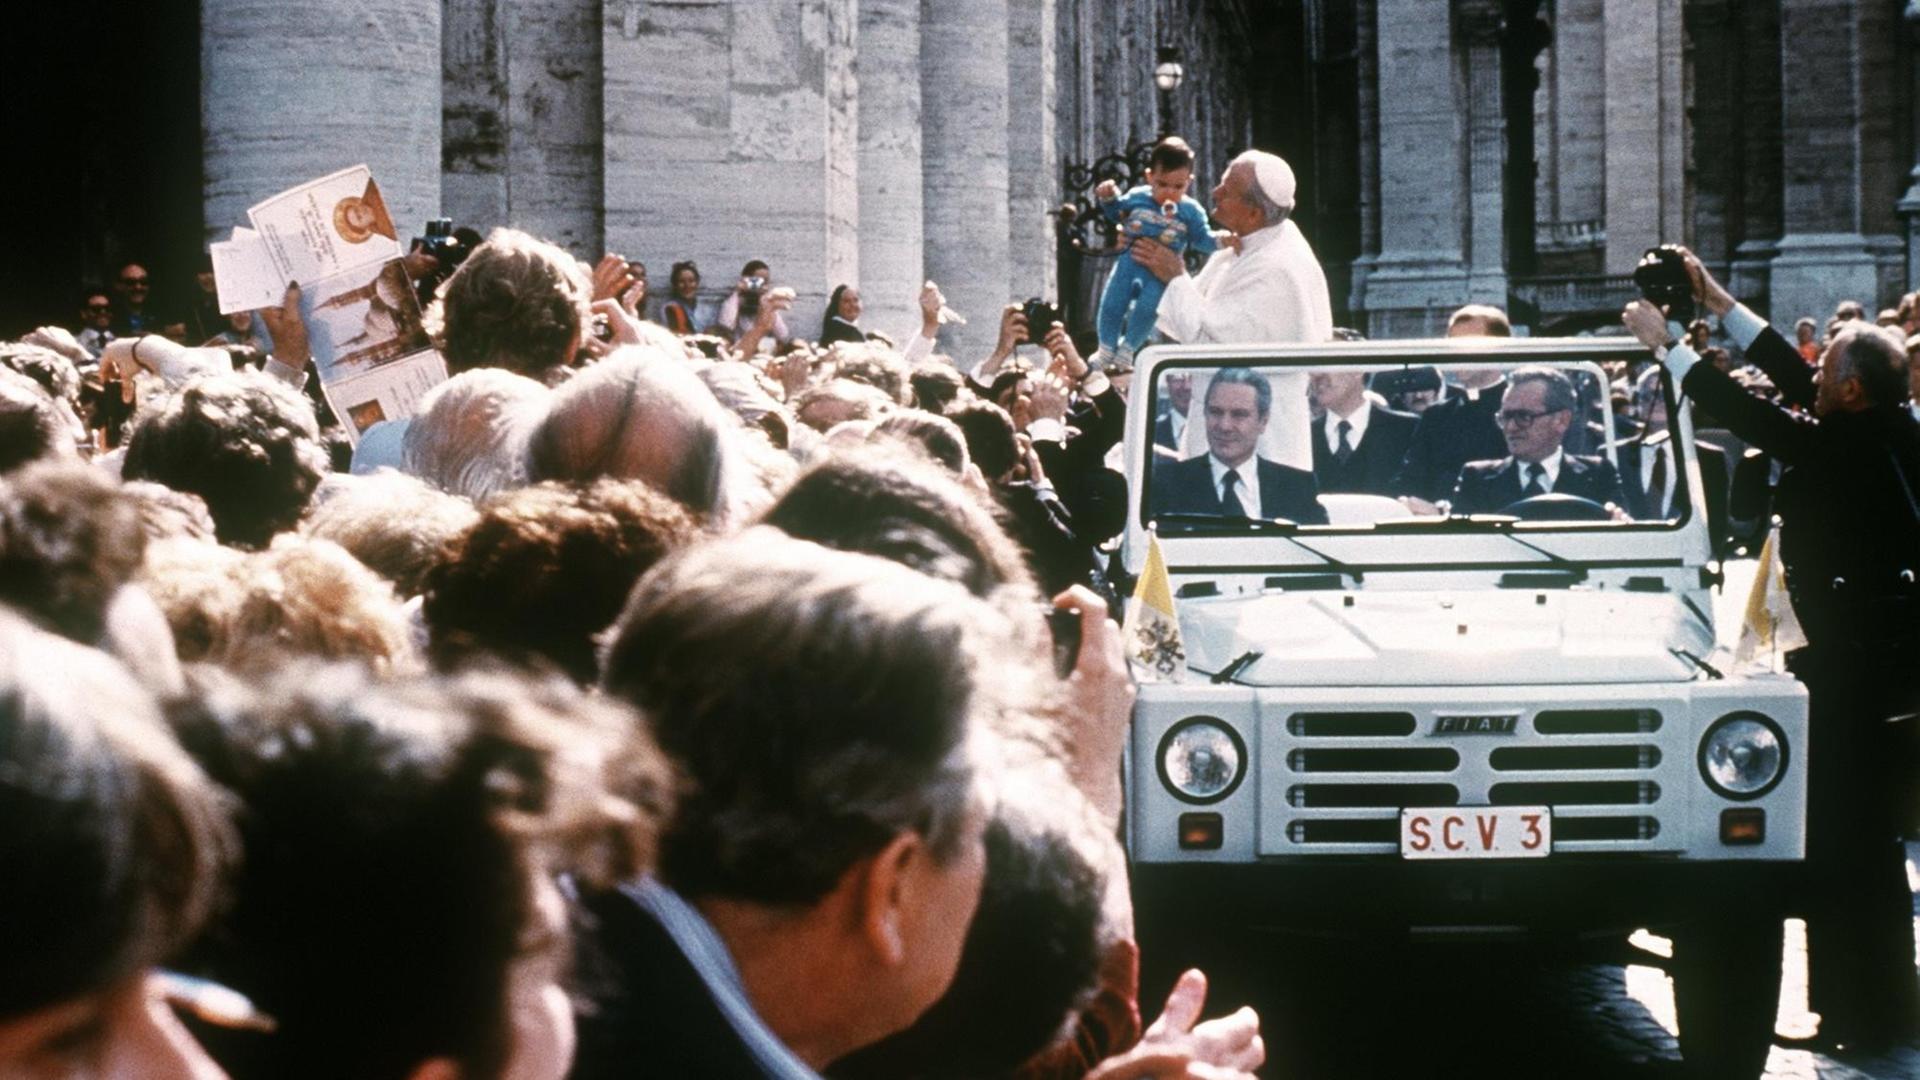 Papst Johannes Paul II. fährt am 13. Mai 1981 in einem offenen Fahrzeug an einer Menschenmenge auf dem Petersplatz in Vatikanstaat vorbei und hält ein kleines Kind auf dem Arm.